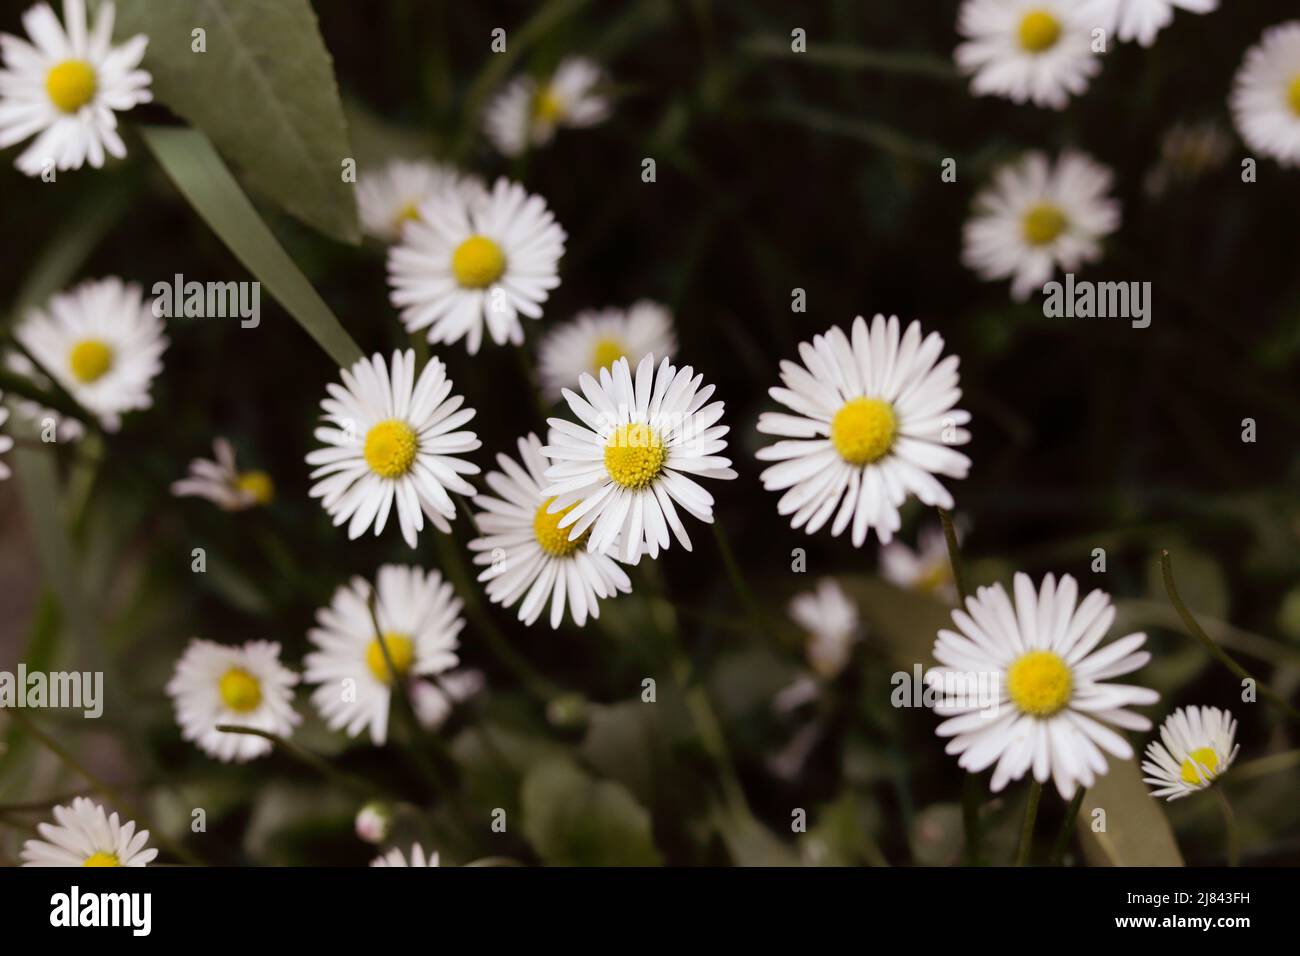 fiori di primavera bianchi come margherite Foto Stock